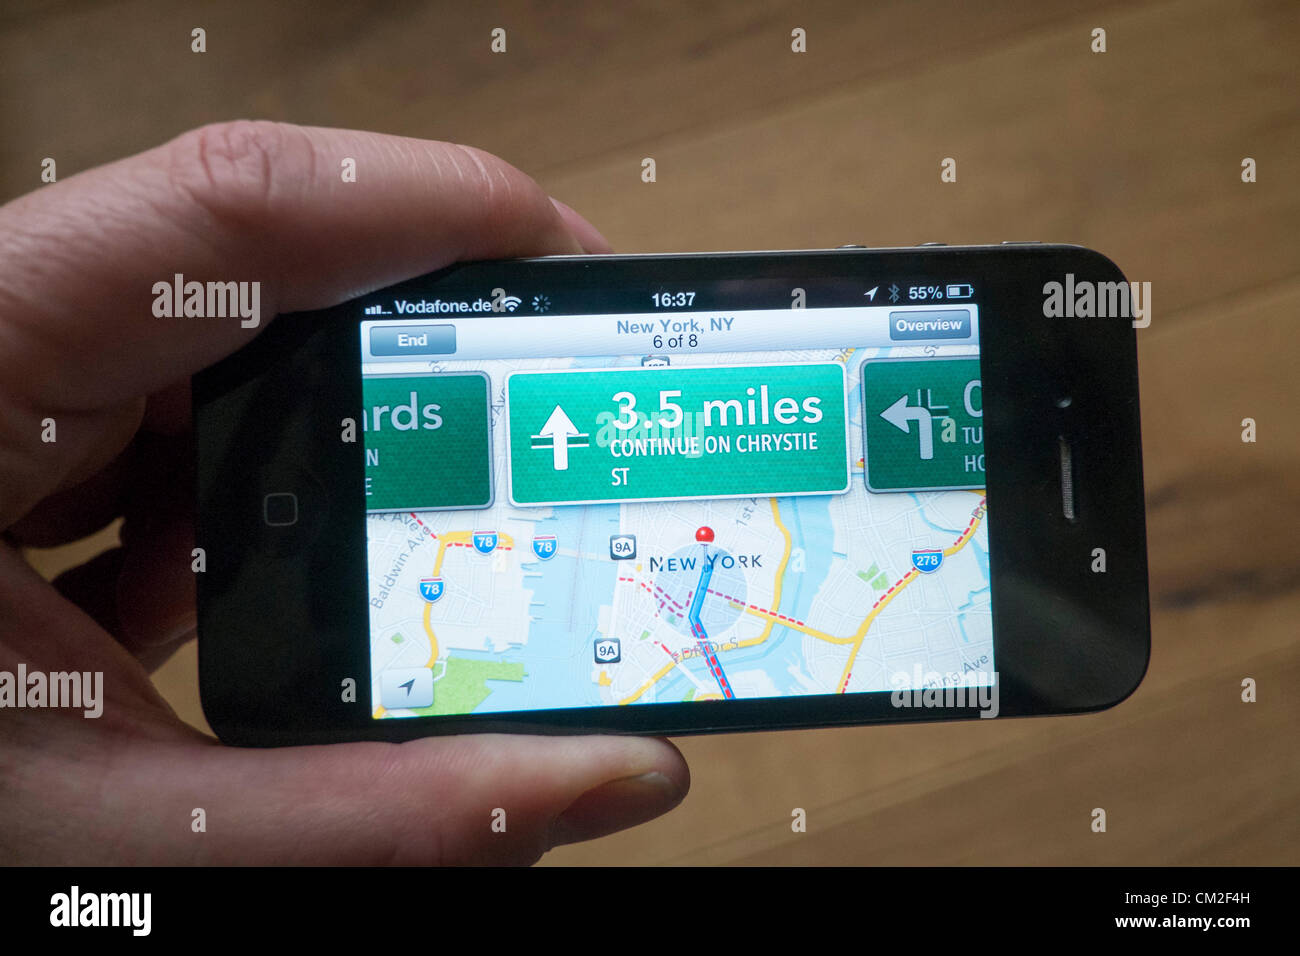 Le monde de la navigation avec des instructions détaillées sur les nouvelles cartes d'Apple application. La nouvelle application Cartes a été critiqué par les utilisateurs pour fournir des emplacements erronés certaines destinations. L'application a été regroupé avec le nouveau système d'exploitation et d'iOS6.0 remplace Google maps. Banque D'Images